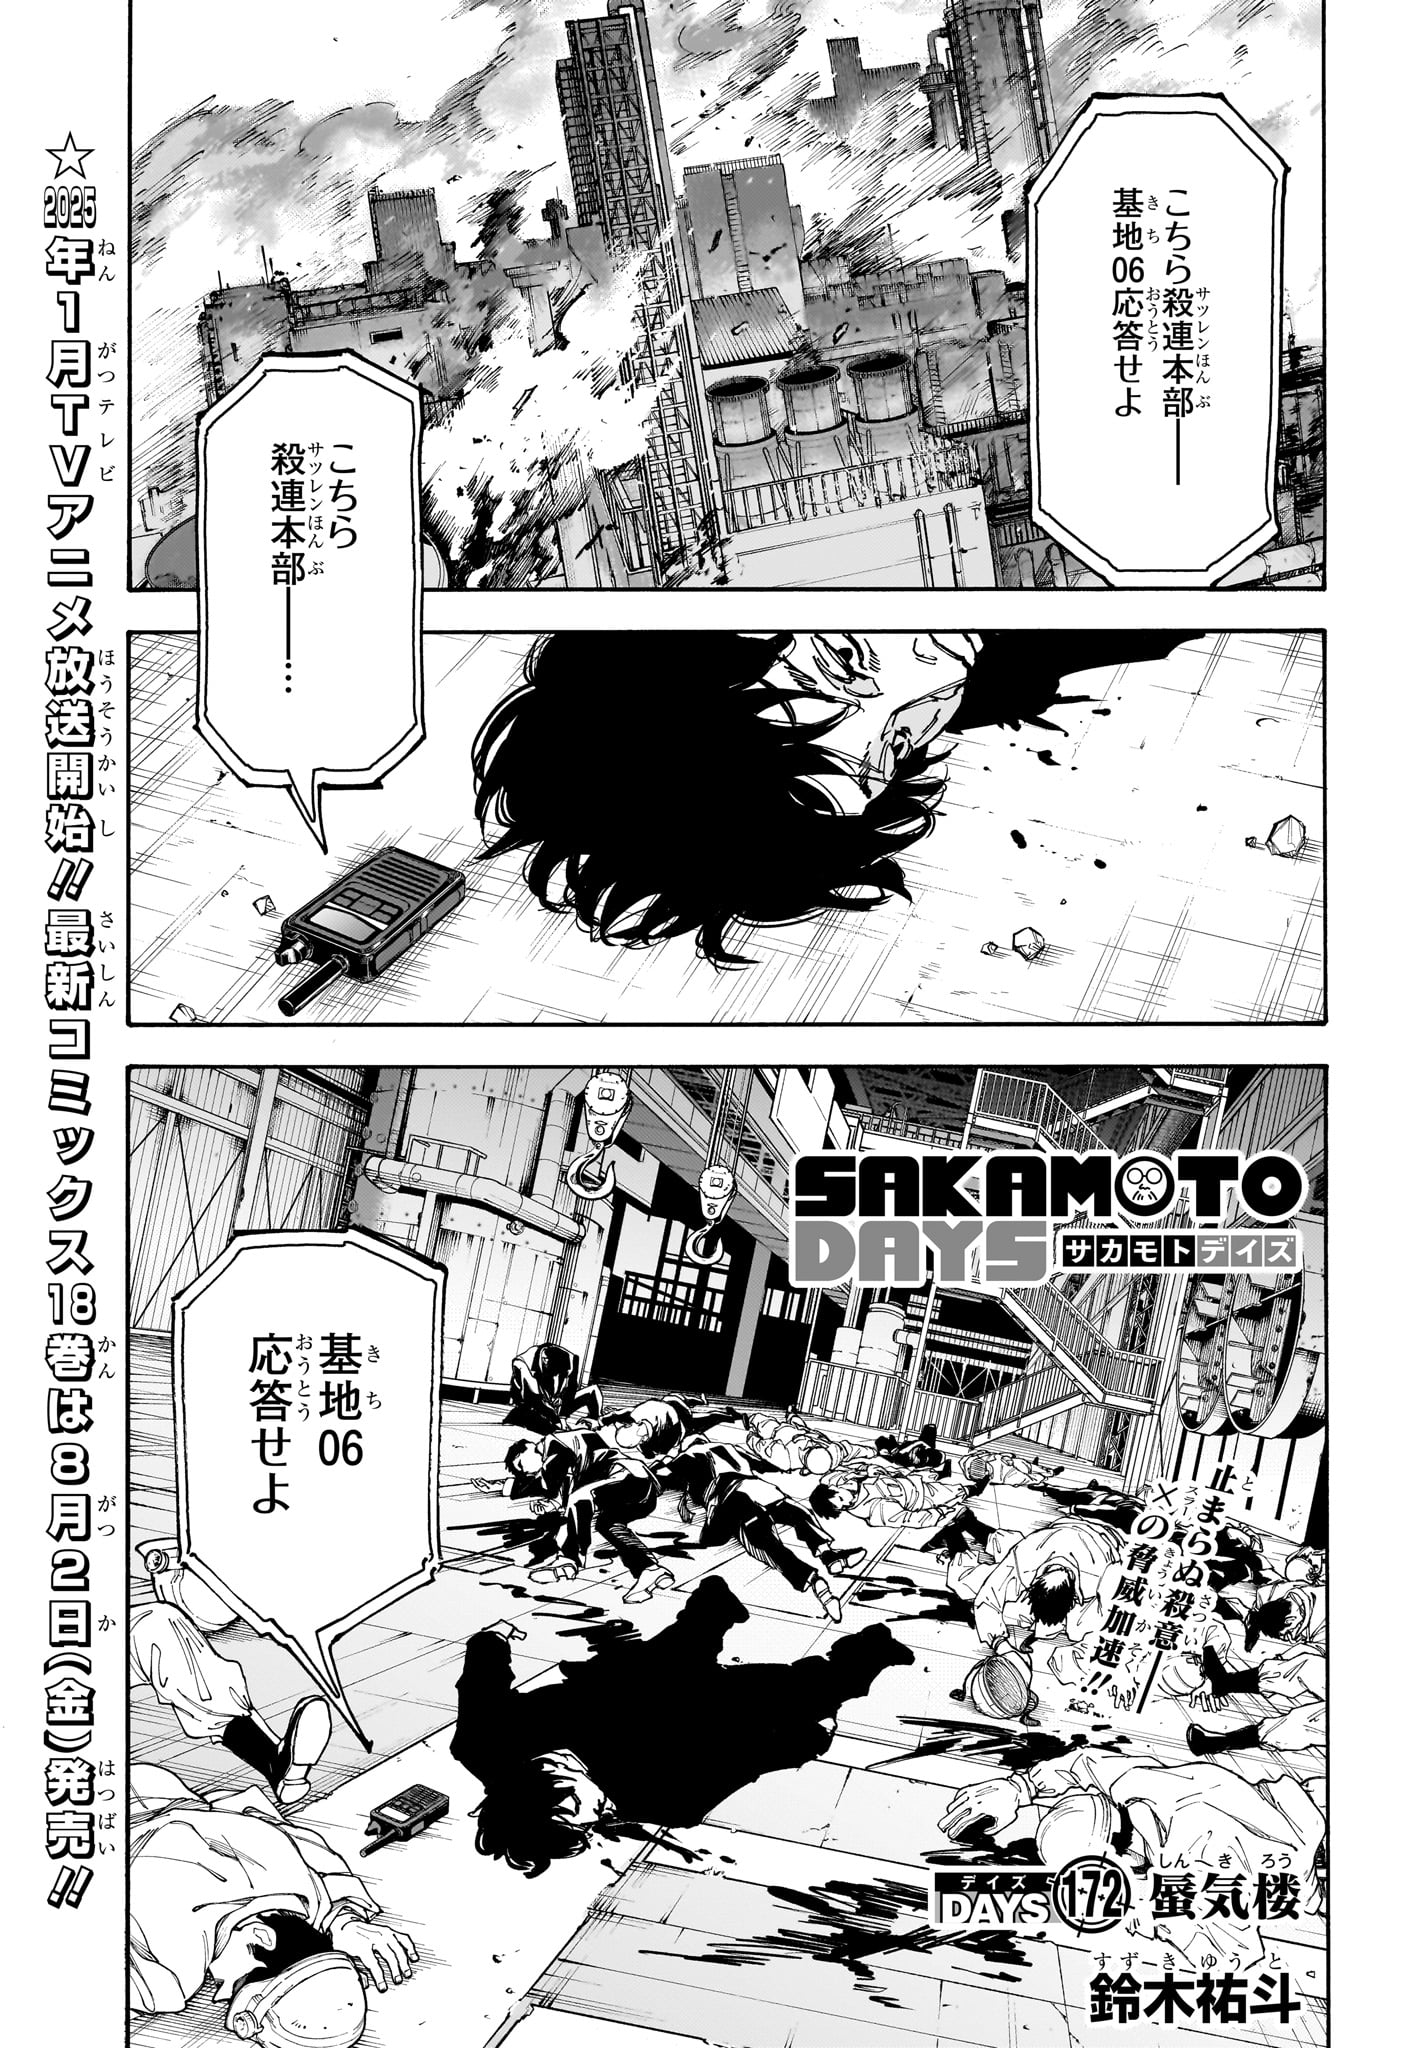 Sakamoto Days - Chapter 172 - Page 1